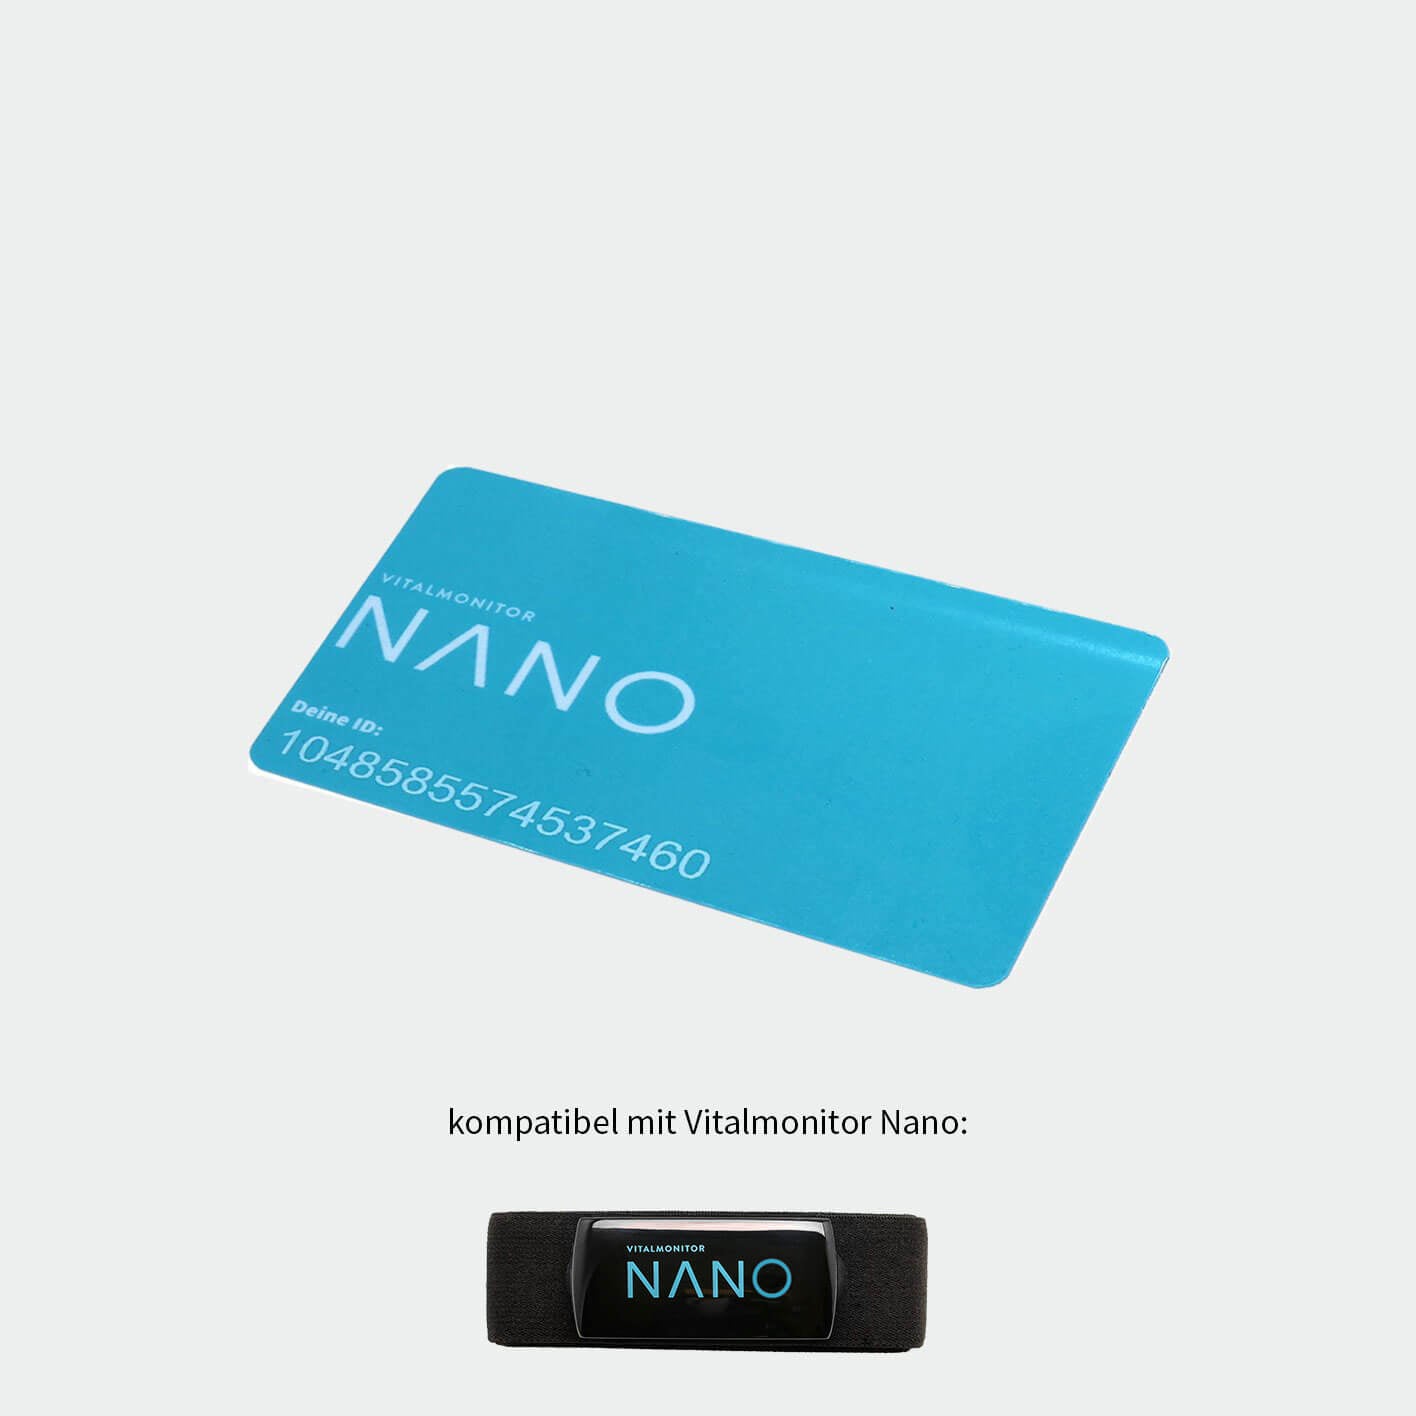 Vitalmonitor Nano ID Card